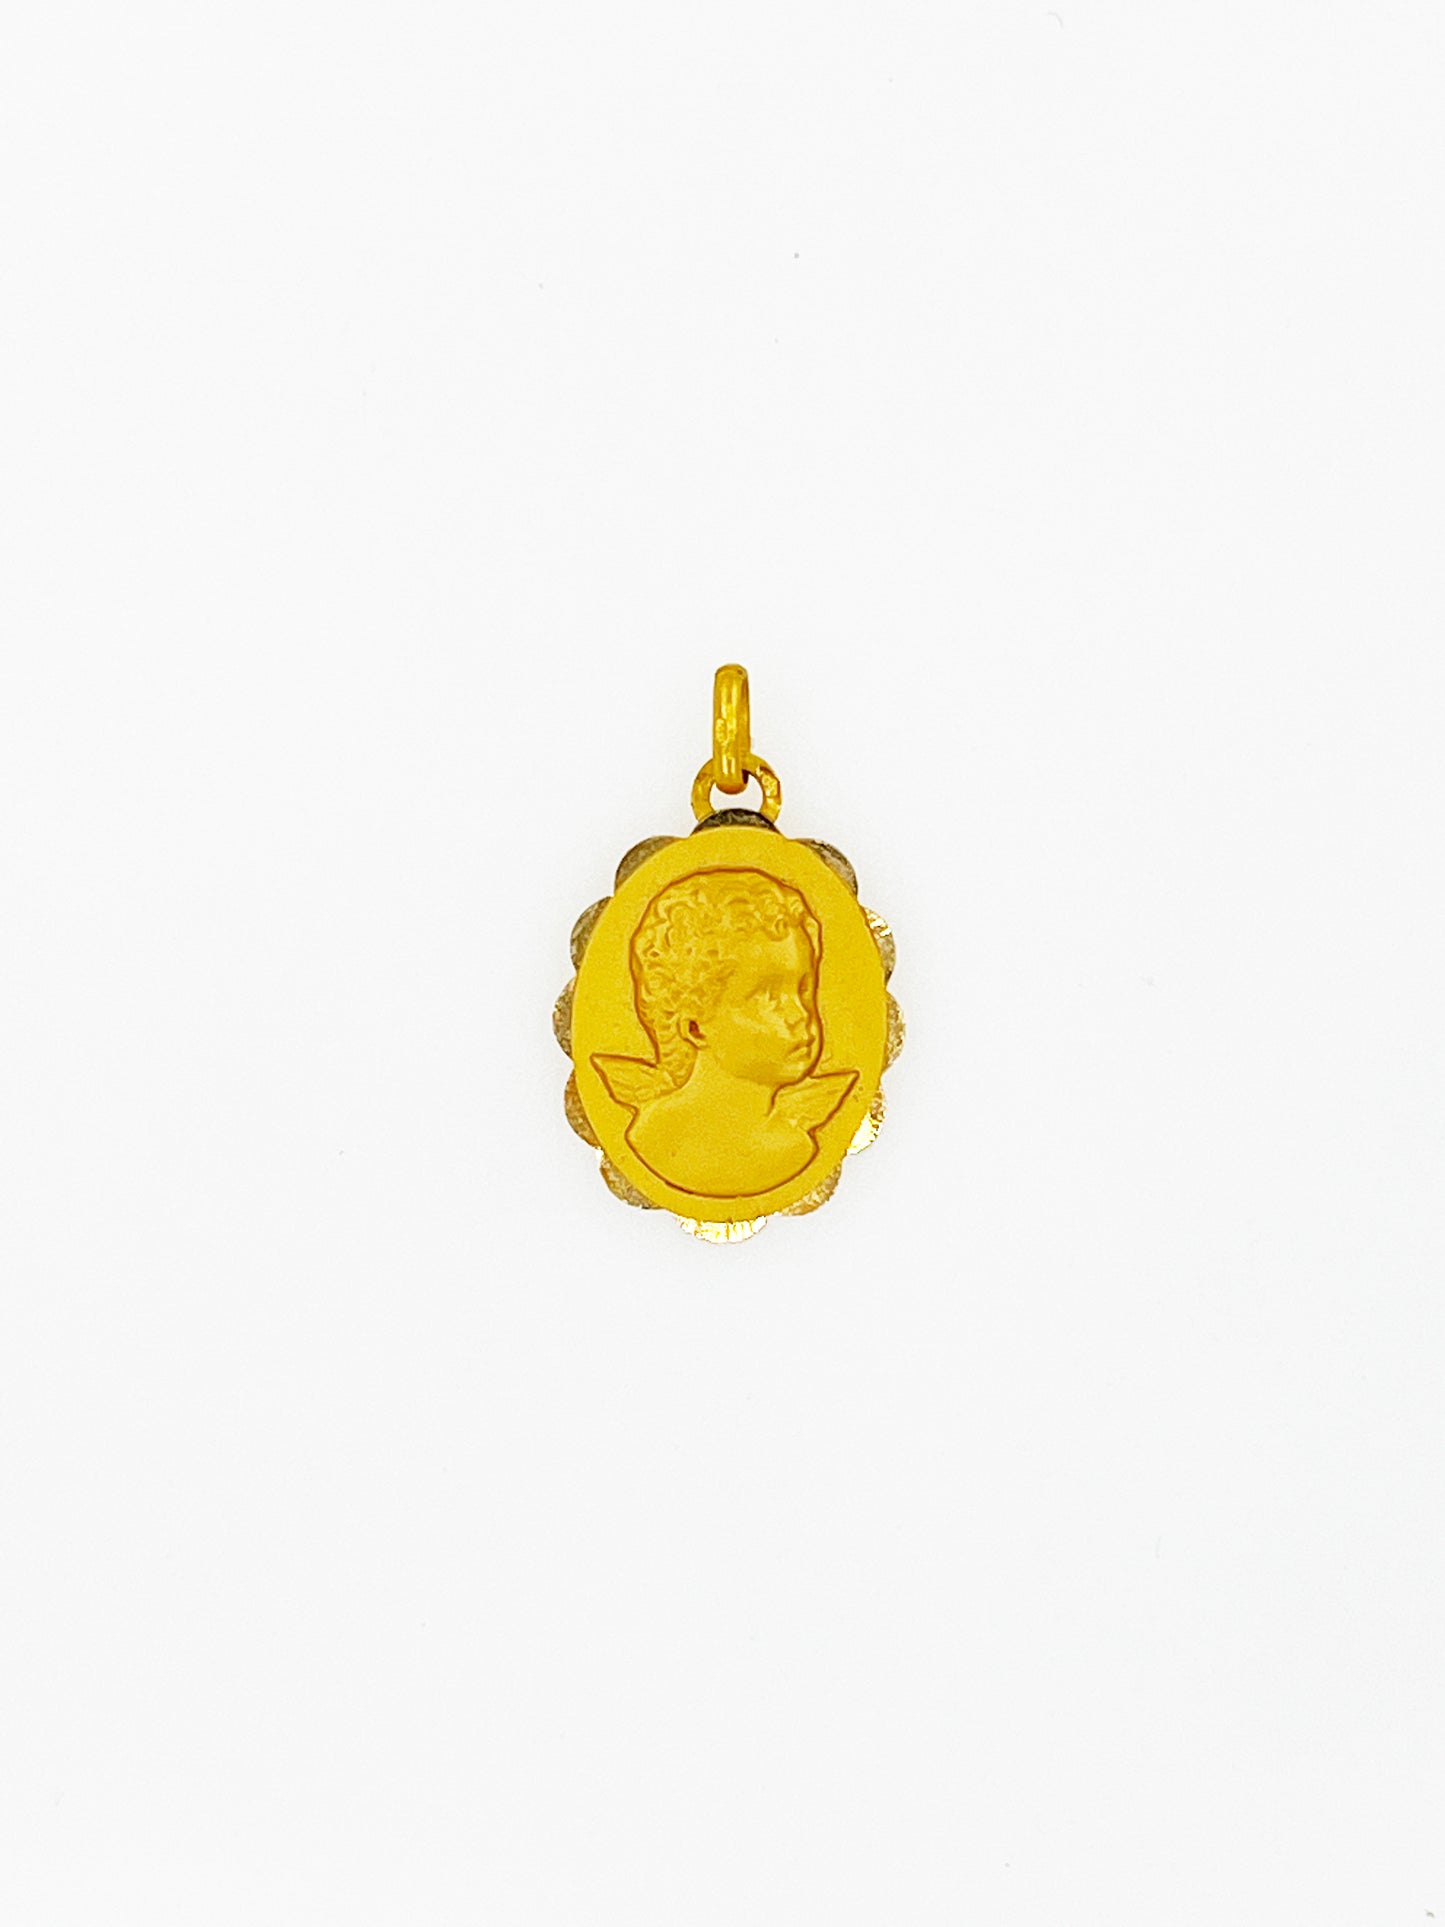 Michelangelo Depiction of Baby Jesus Pendant in 18k Yellow Gold